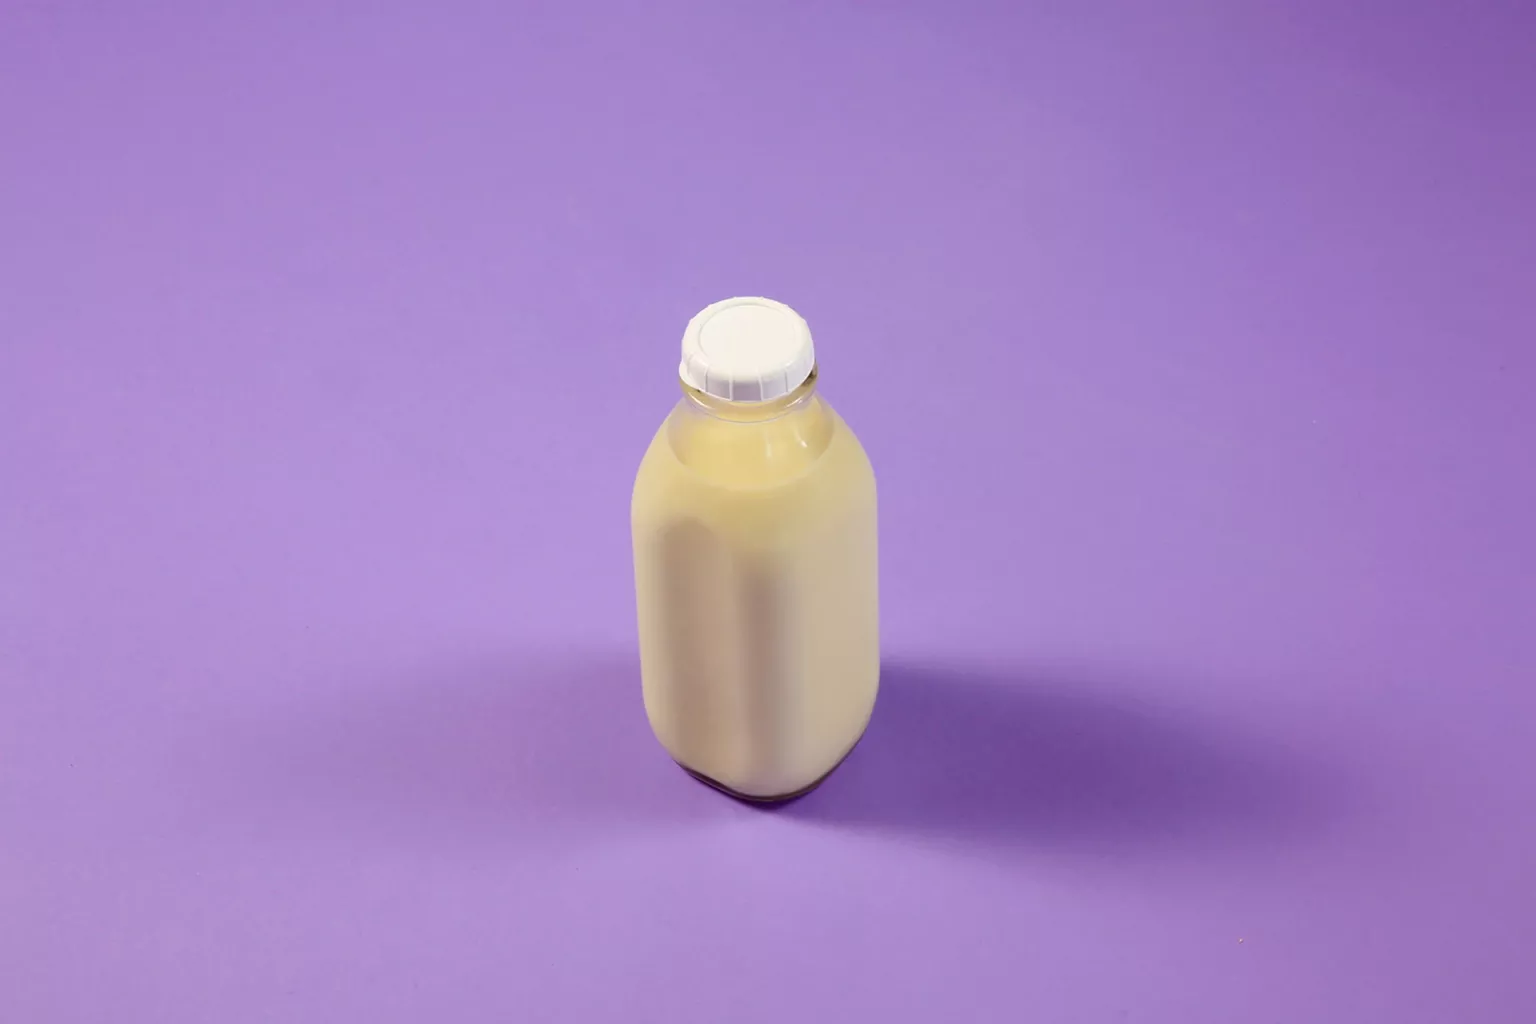 Milk fills a reusable glass bottle